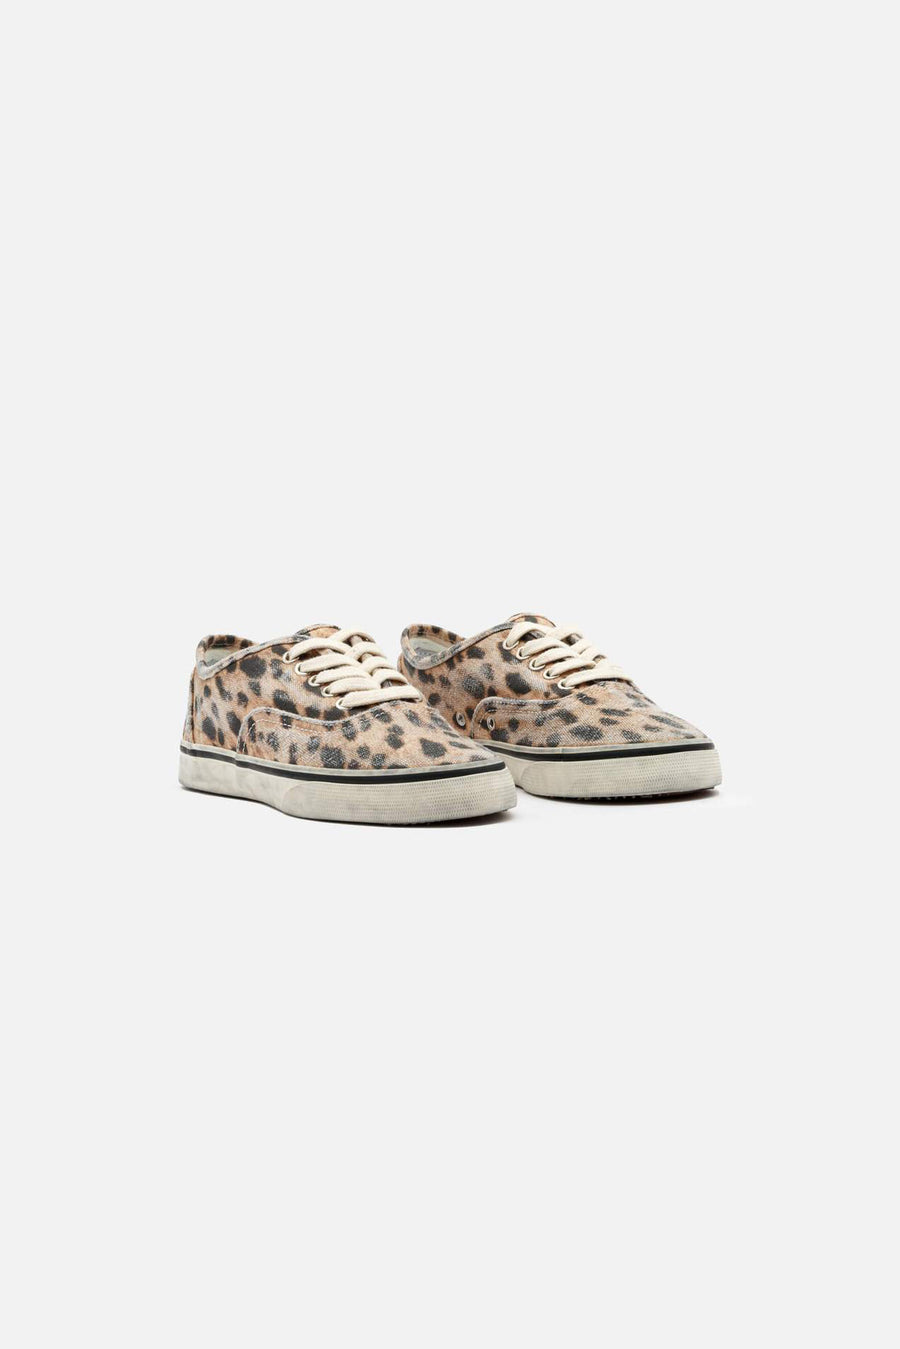 70s Low Top Skate Sneaker Faded Leopard - blueandcream